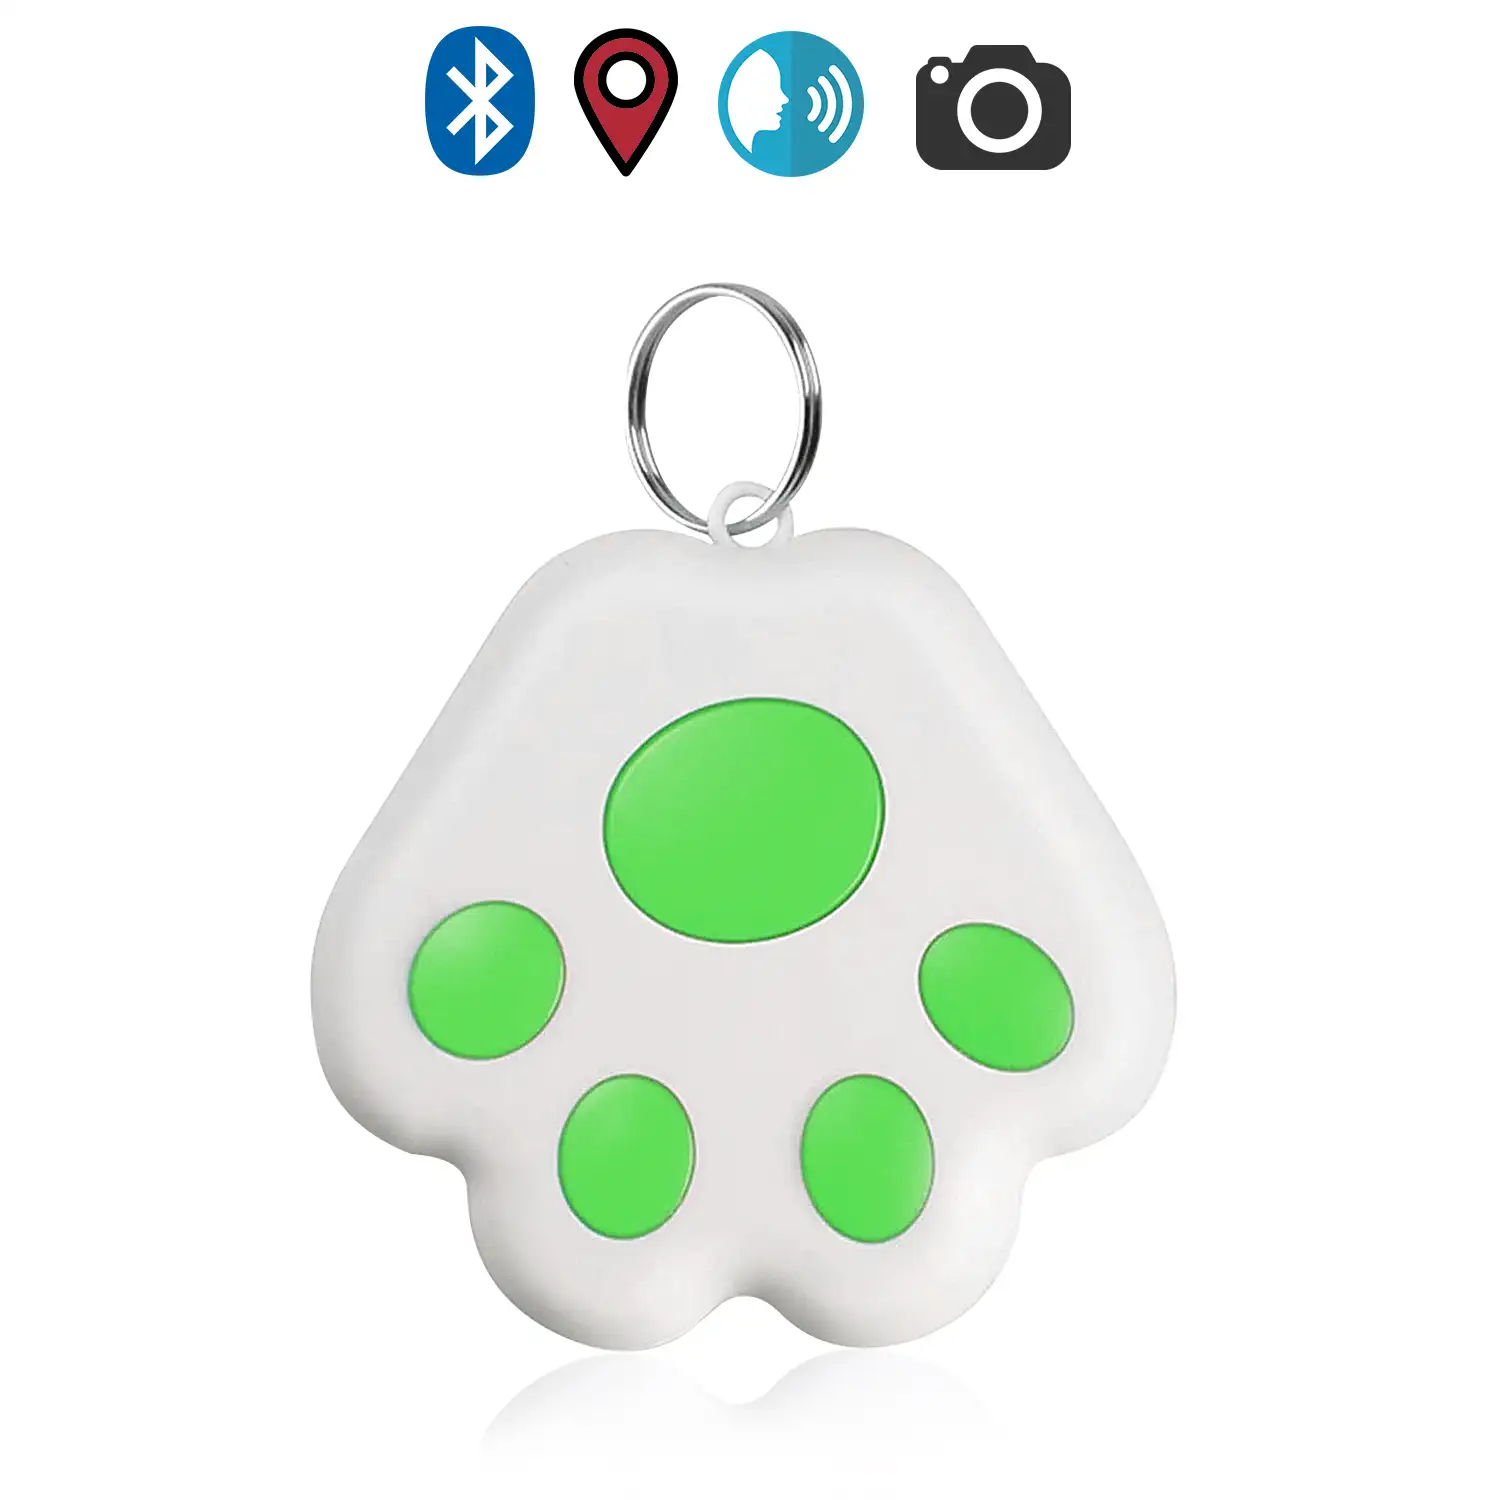 Localizador PAW Bluetooth 4.0 multifunción, con indicador GPS de última localización. Para mascotas, llaves, maletas, etc.